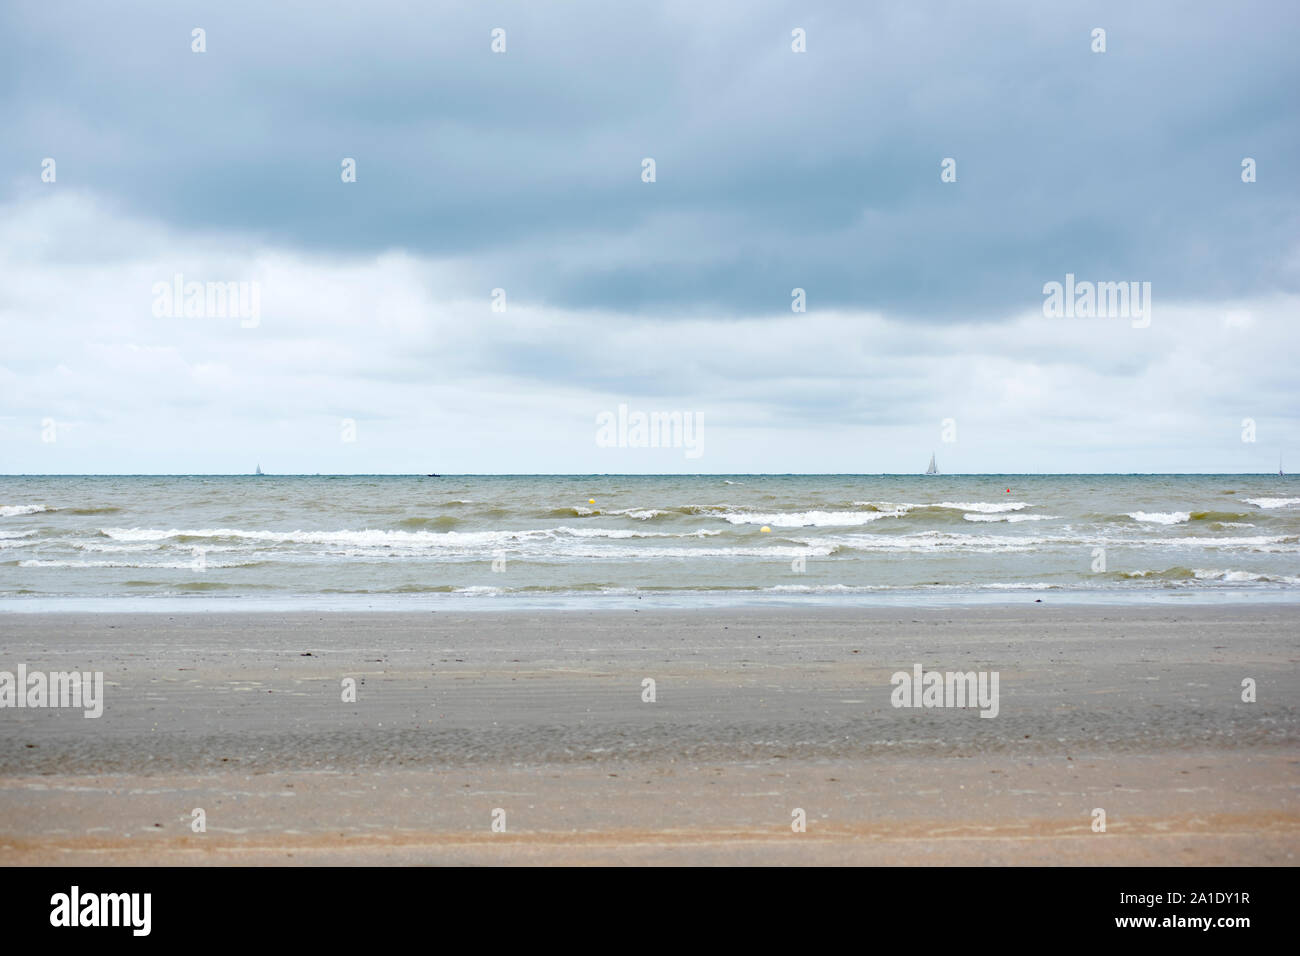 À l'ouest de la côte à Nieuwport, Flandre occidentale, Belgique. Mer du Nord dans l'arrière-plan avec des vagues et des nuages gris dans le ciel. Banque D'Images